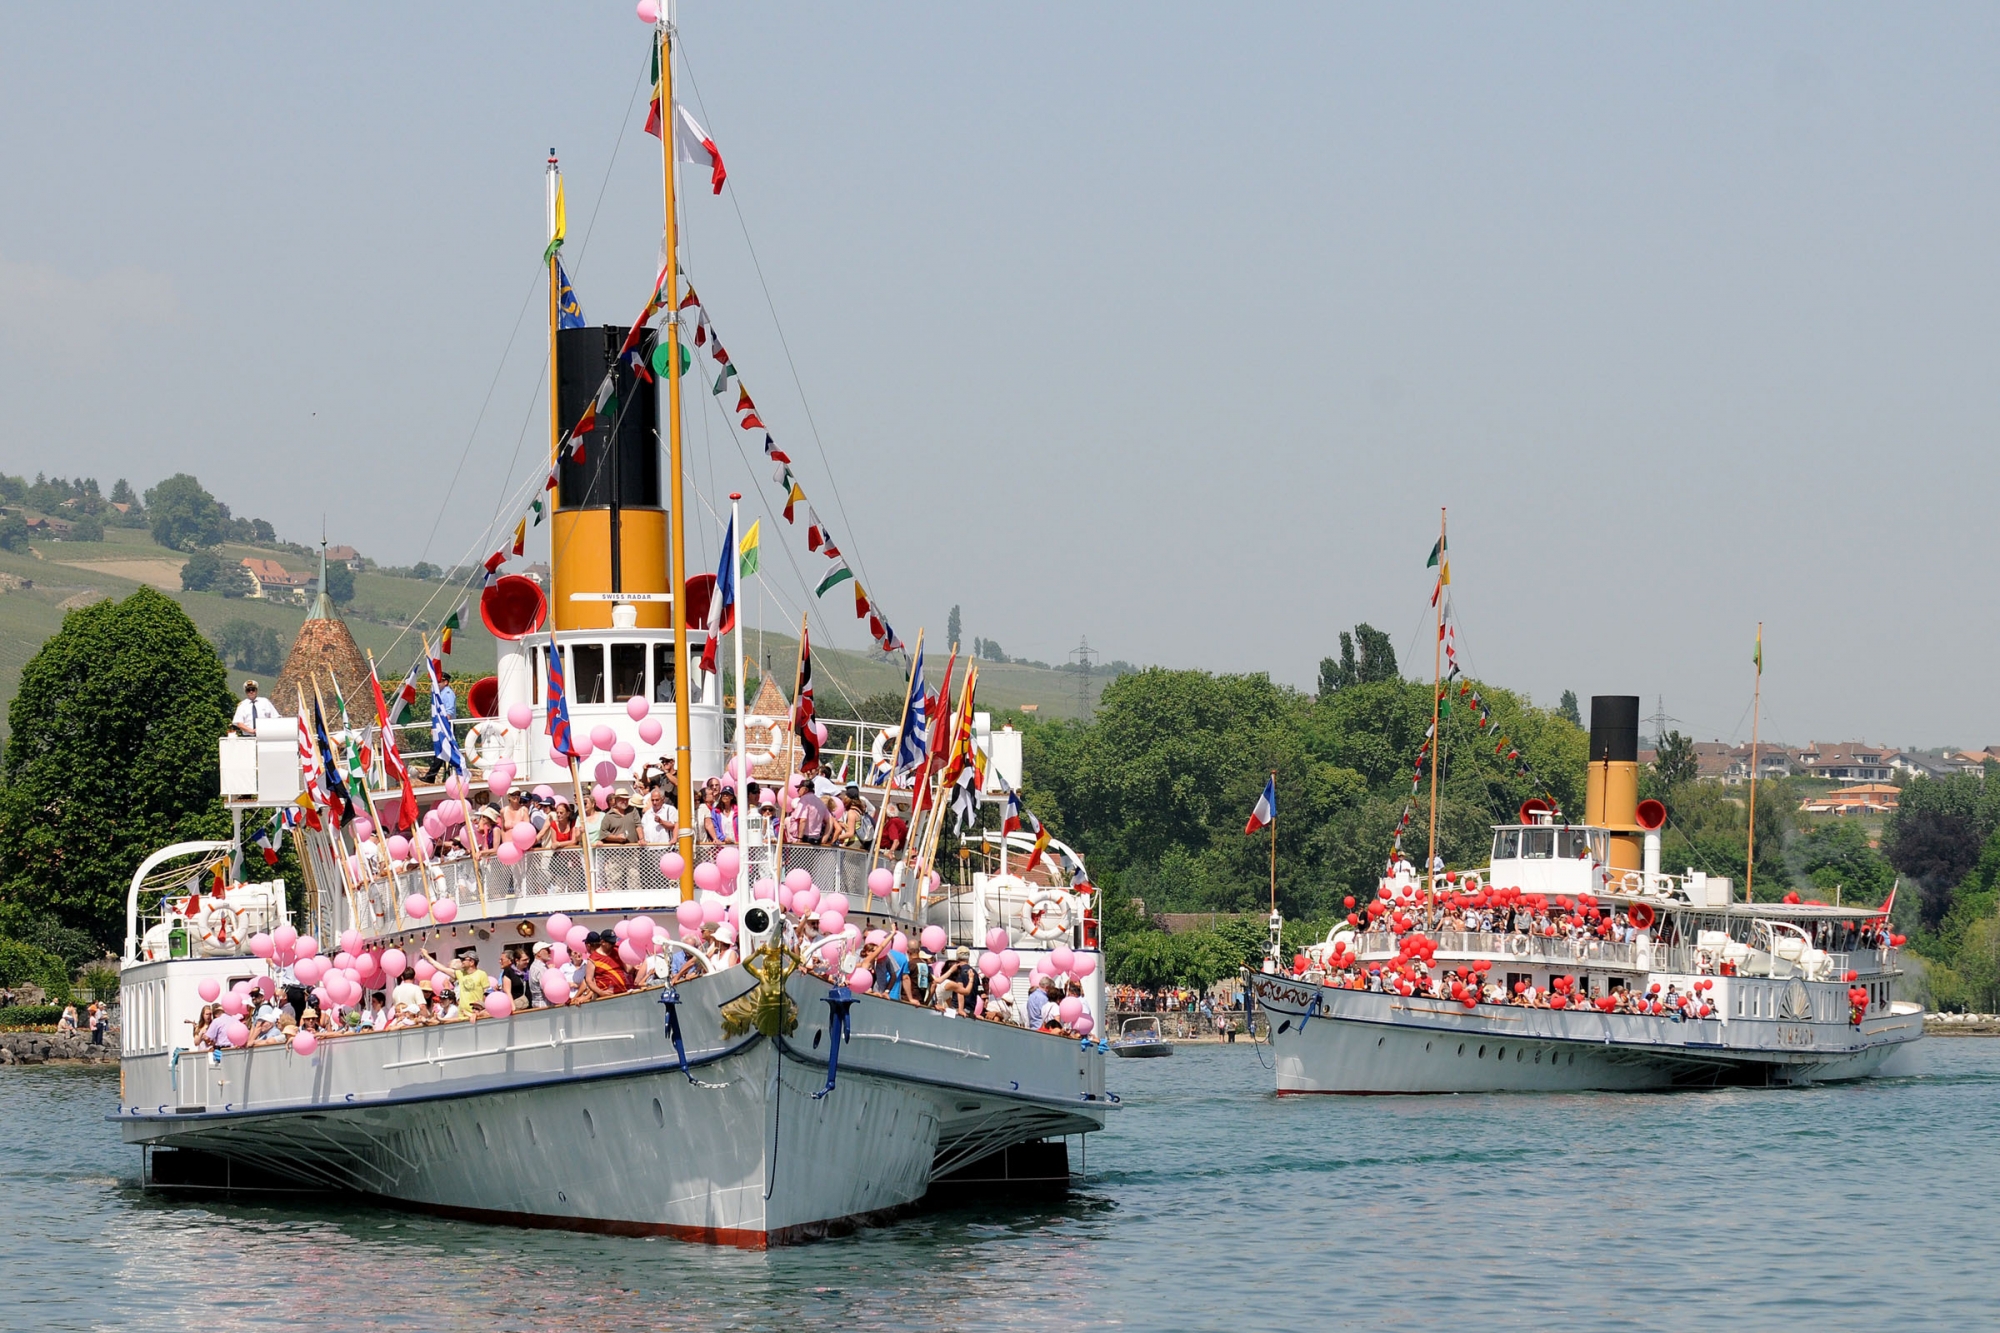 Ce dimanche, les rives de Rolle seront le théâtre de la Parade navale de la CGN ainsi que de l'inauguration d'une sculpture reçue pour les 700 ans de la ville.